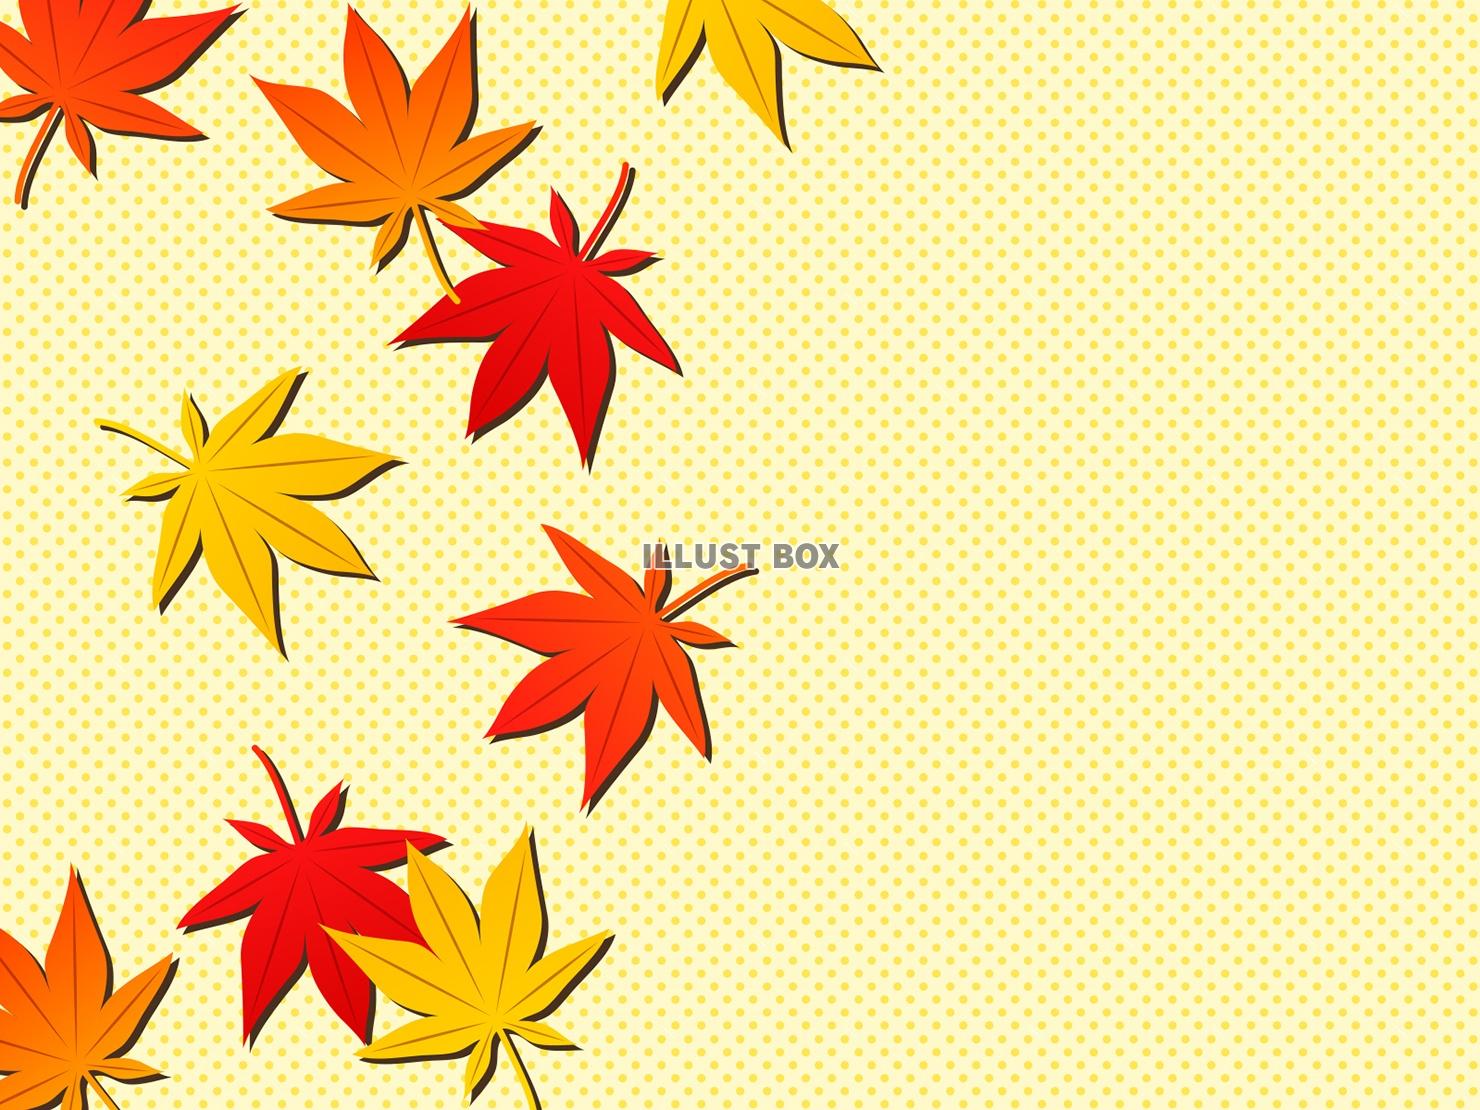 無料イラスト 秋の落ち葉のイラスト背景